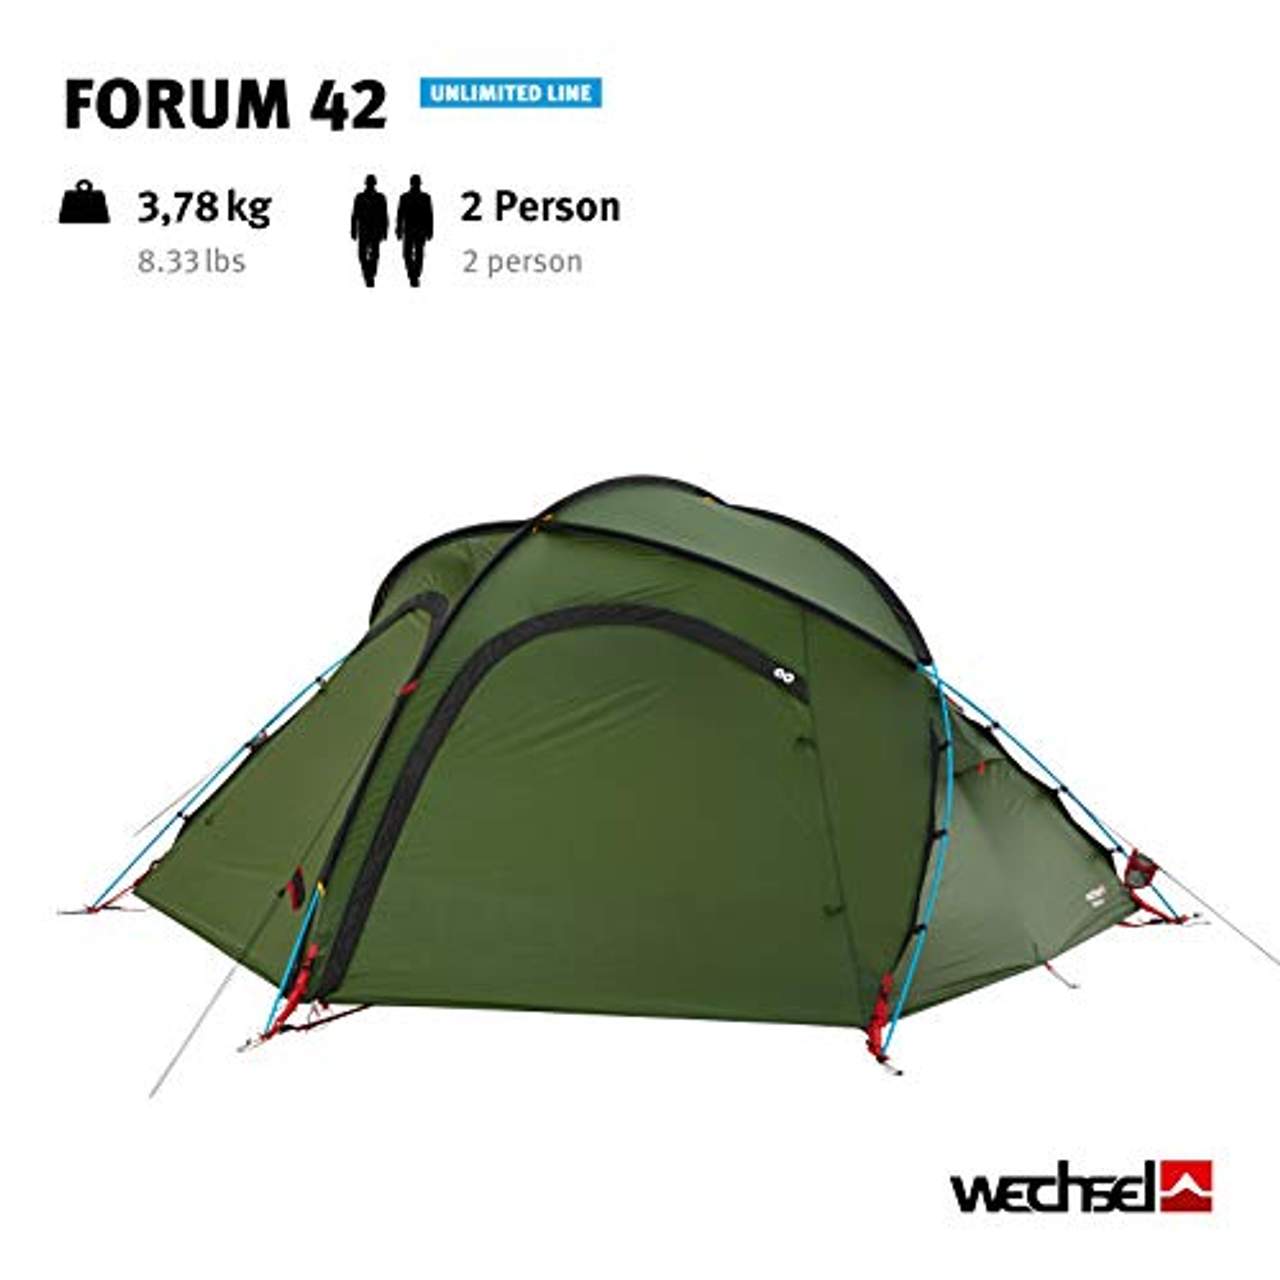 Wechsel Tents Forum 42